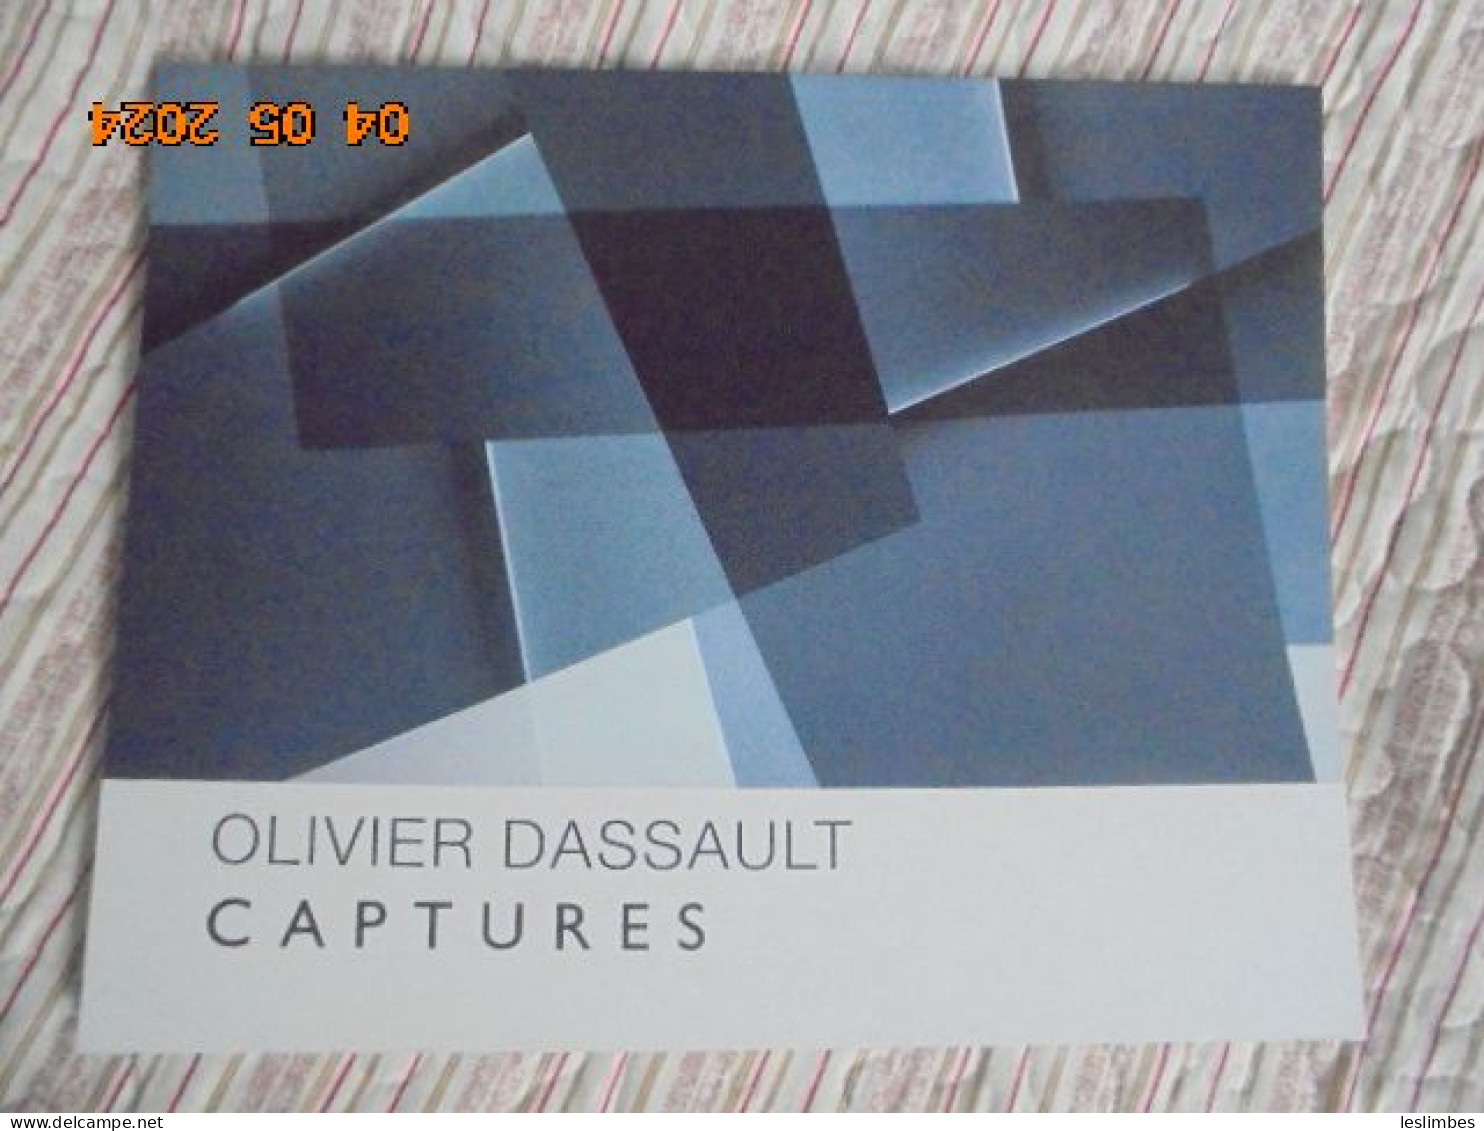 Olivier Dassault : Captures - Guy Pieters Gallery 2014 - Kunst